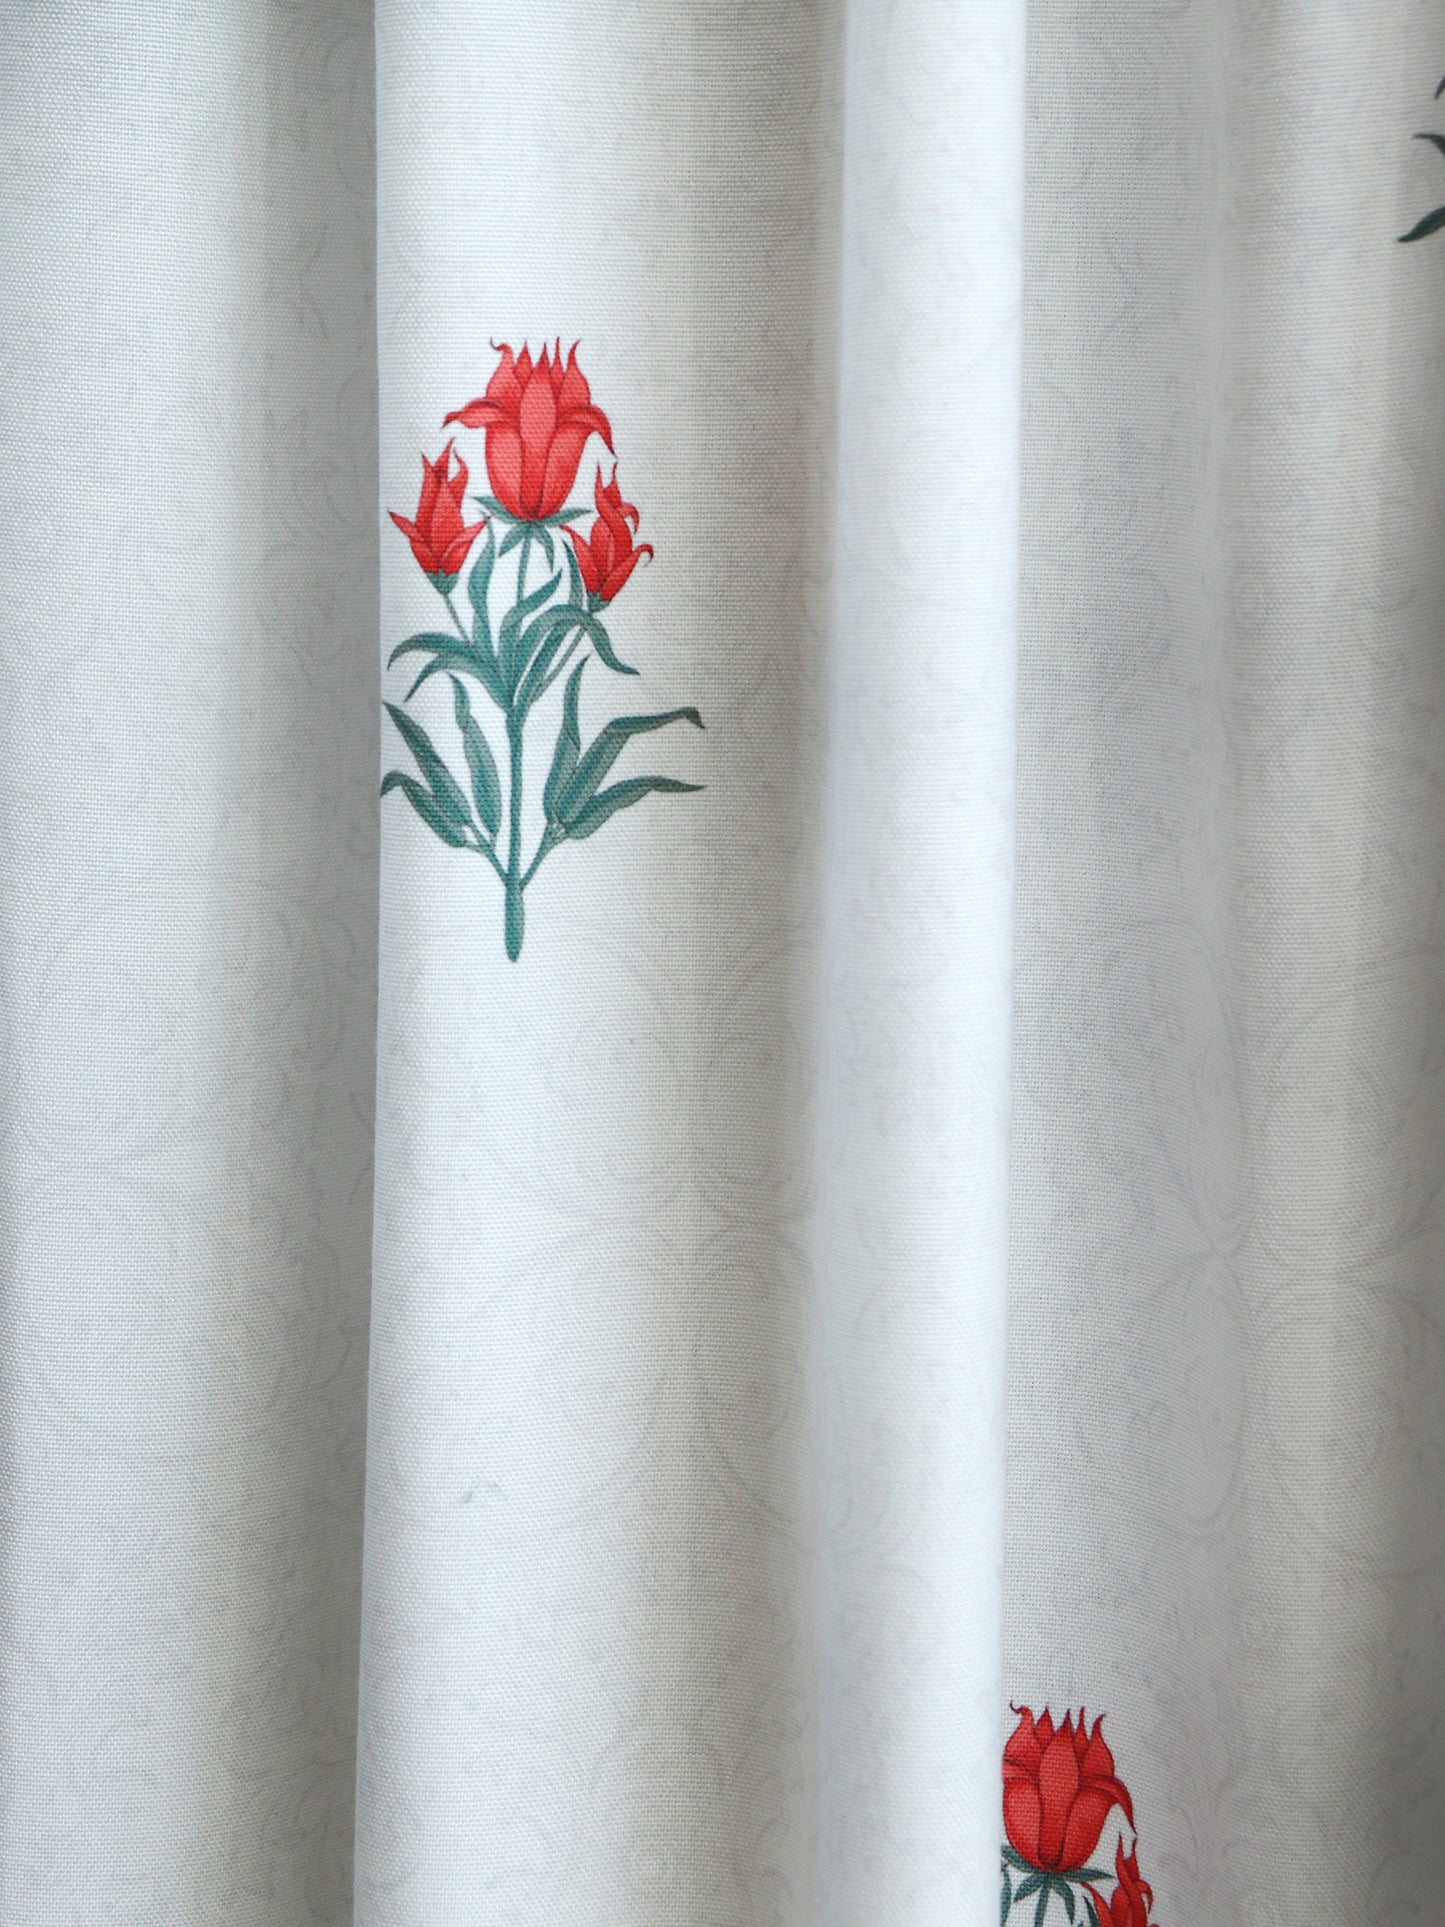 Door Curtain Cotton Blend Floral Digital Printed in White Orange - 50" x 84" (Pack of 2)(Hidden Loop)